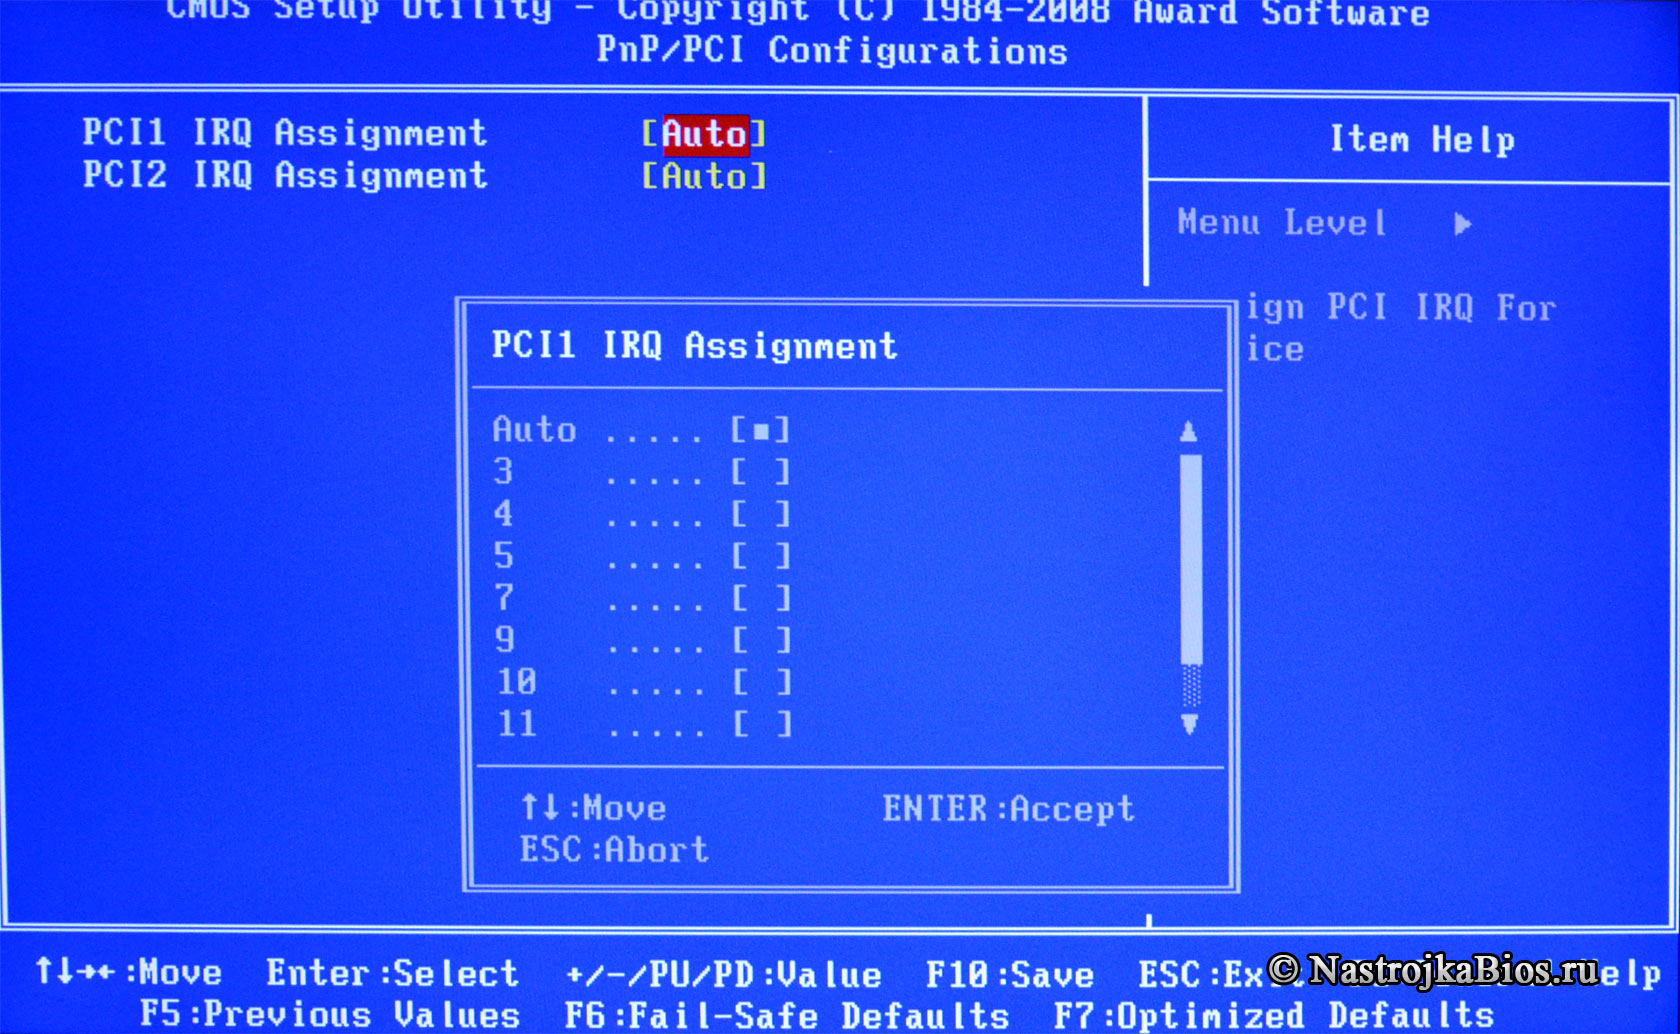 PCI 1 Assignment - назначение прерывания устройству установленого в PCI №1